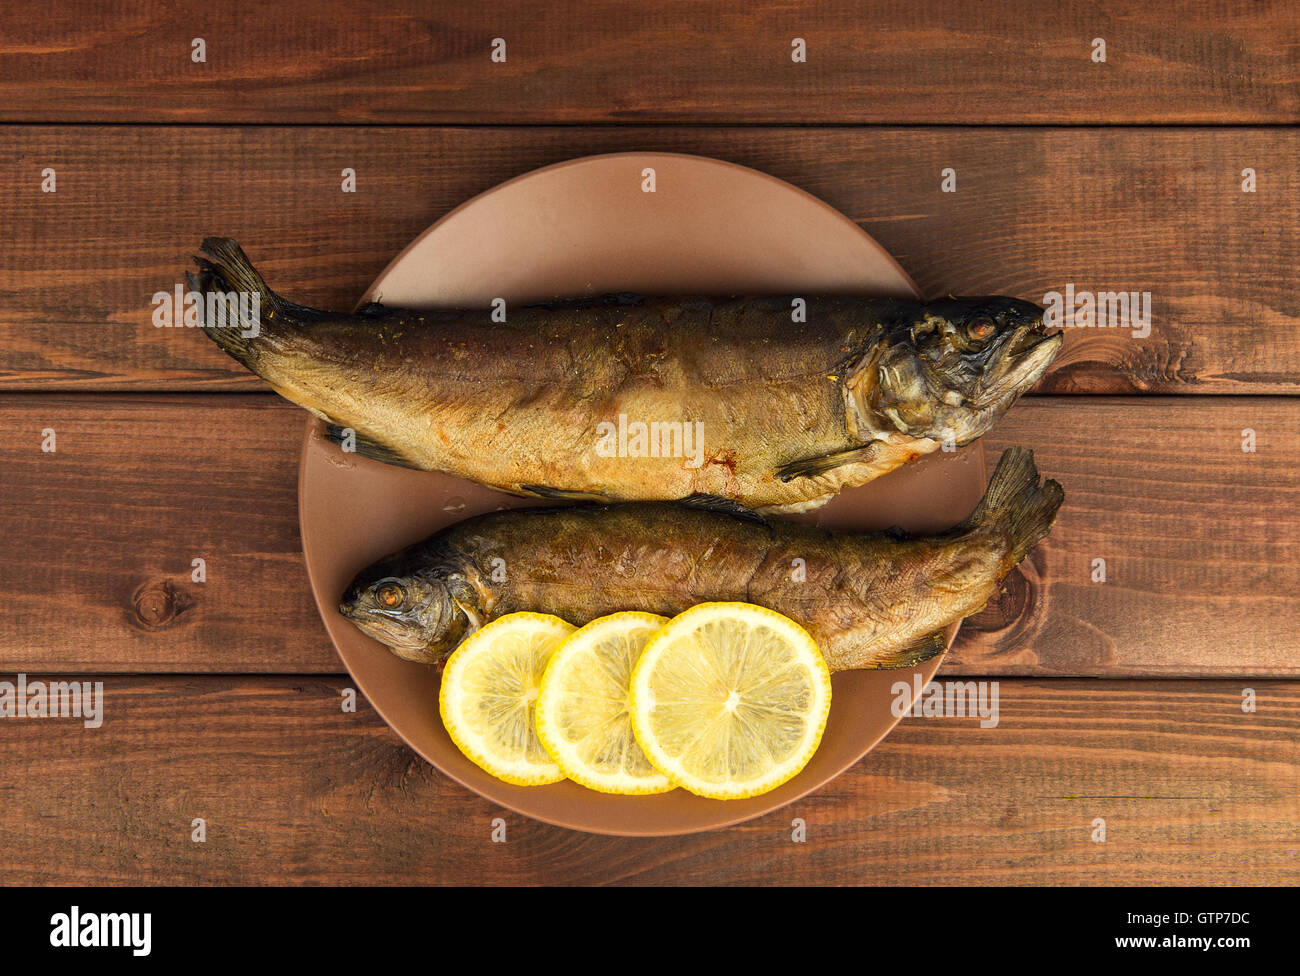 Sur la table en bois est une plaque avec deux truite poisson au four avec du citron Banque D'Images